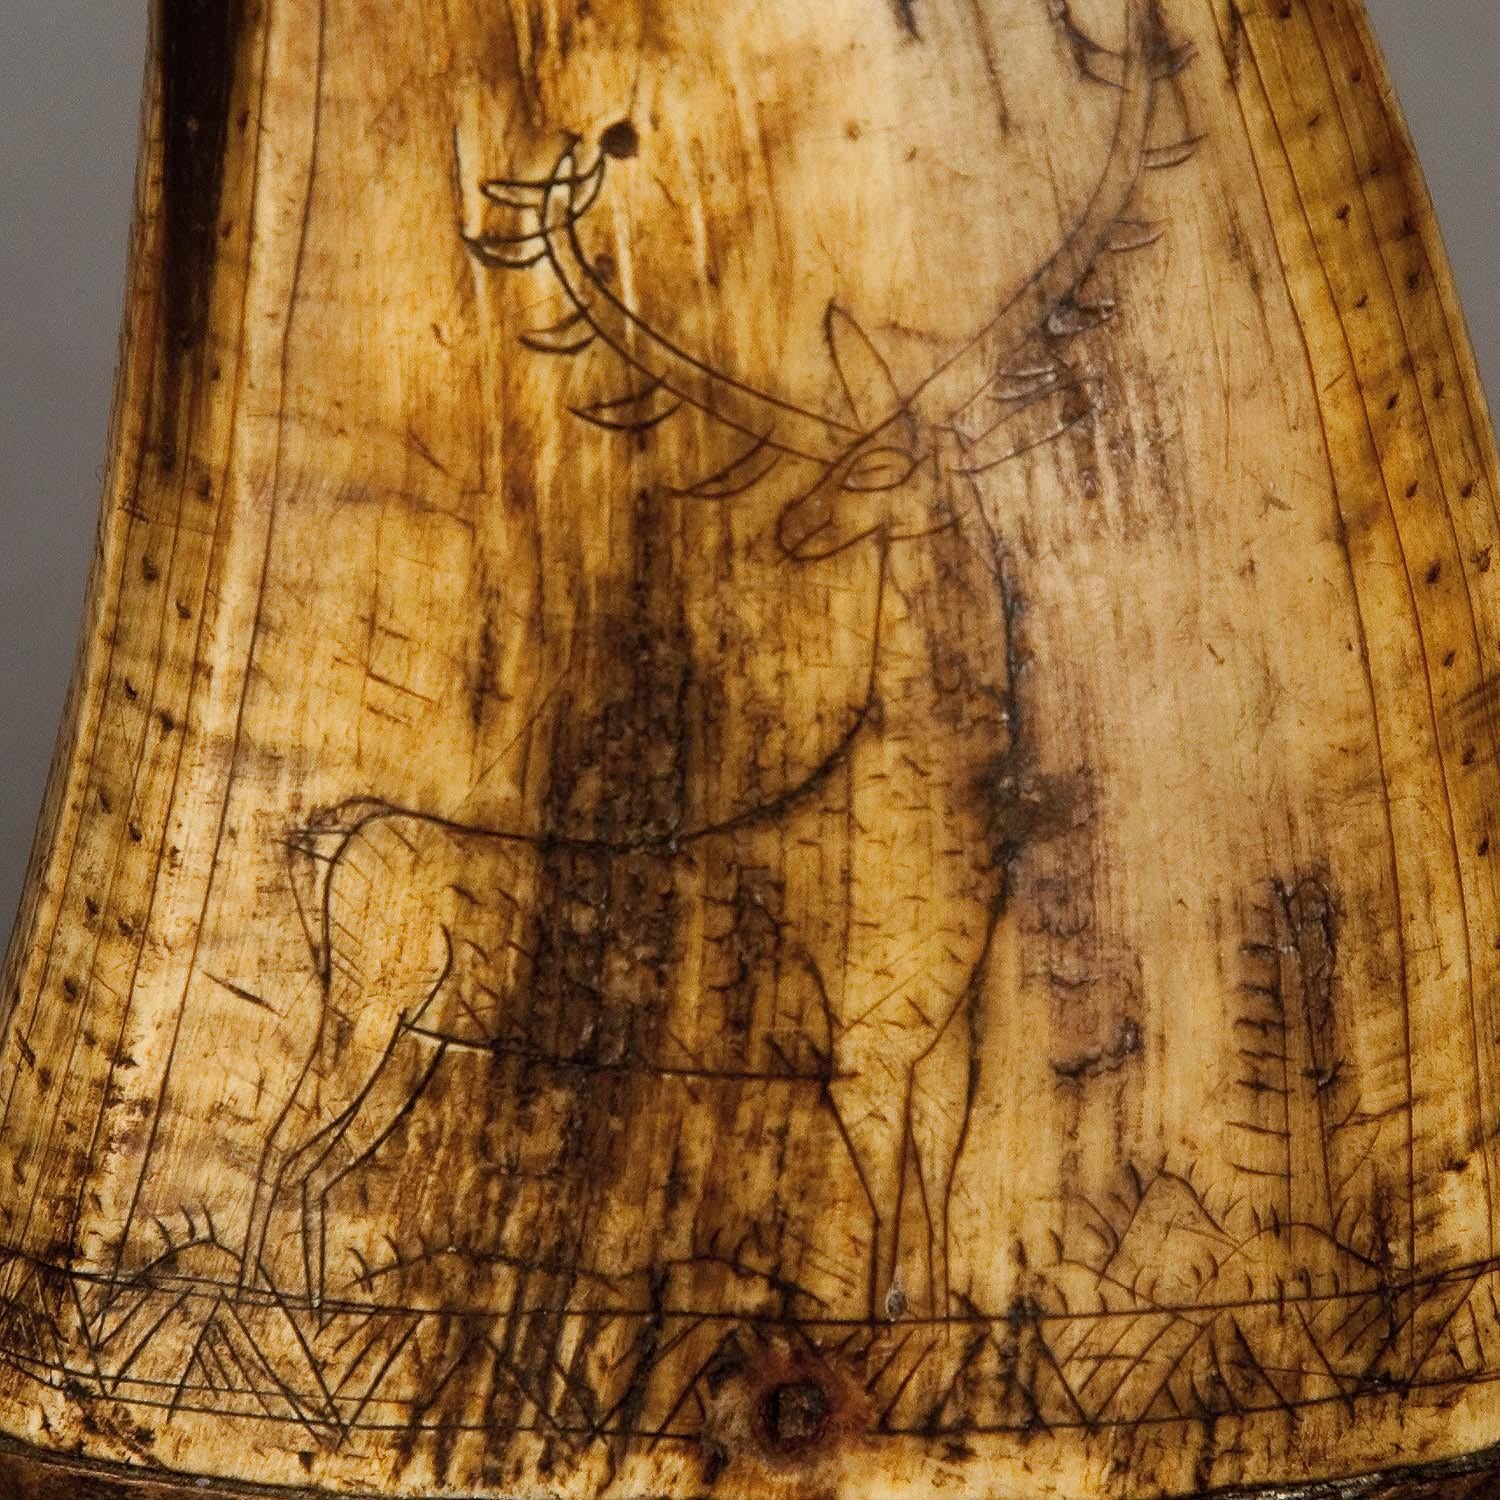 Corne d'escargot avec grandes gravures, 18ème siècle

Une corne à poudre antique faite de corne et de bois. Des scènes de chasse gravées représentent un cerf stylisé et un groupe de chamois dans un paysage rocheux. Il a été fabriqué à la main en